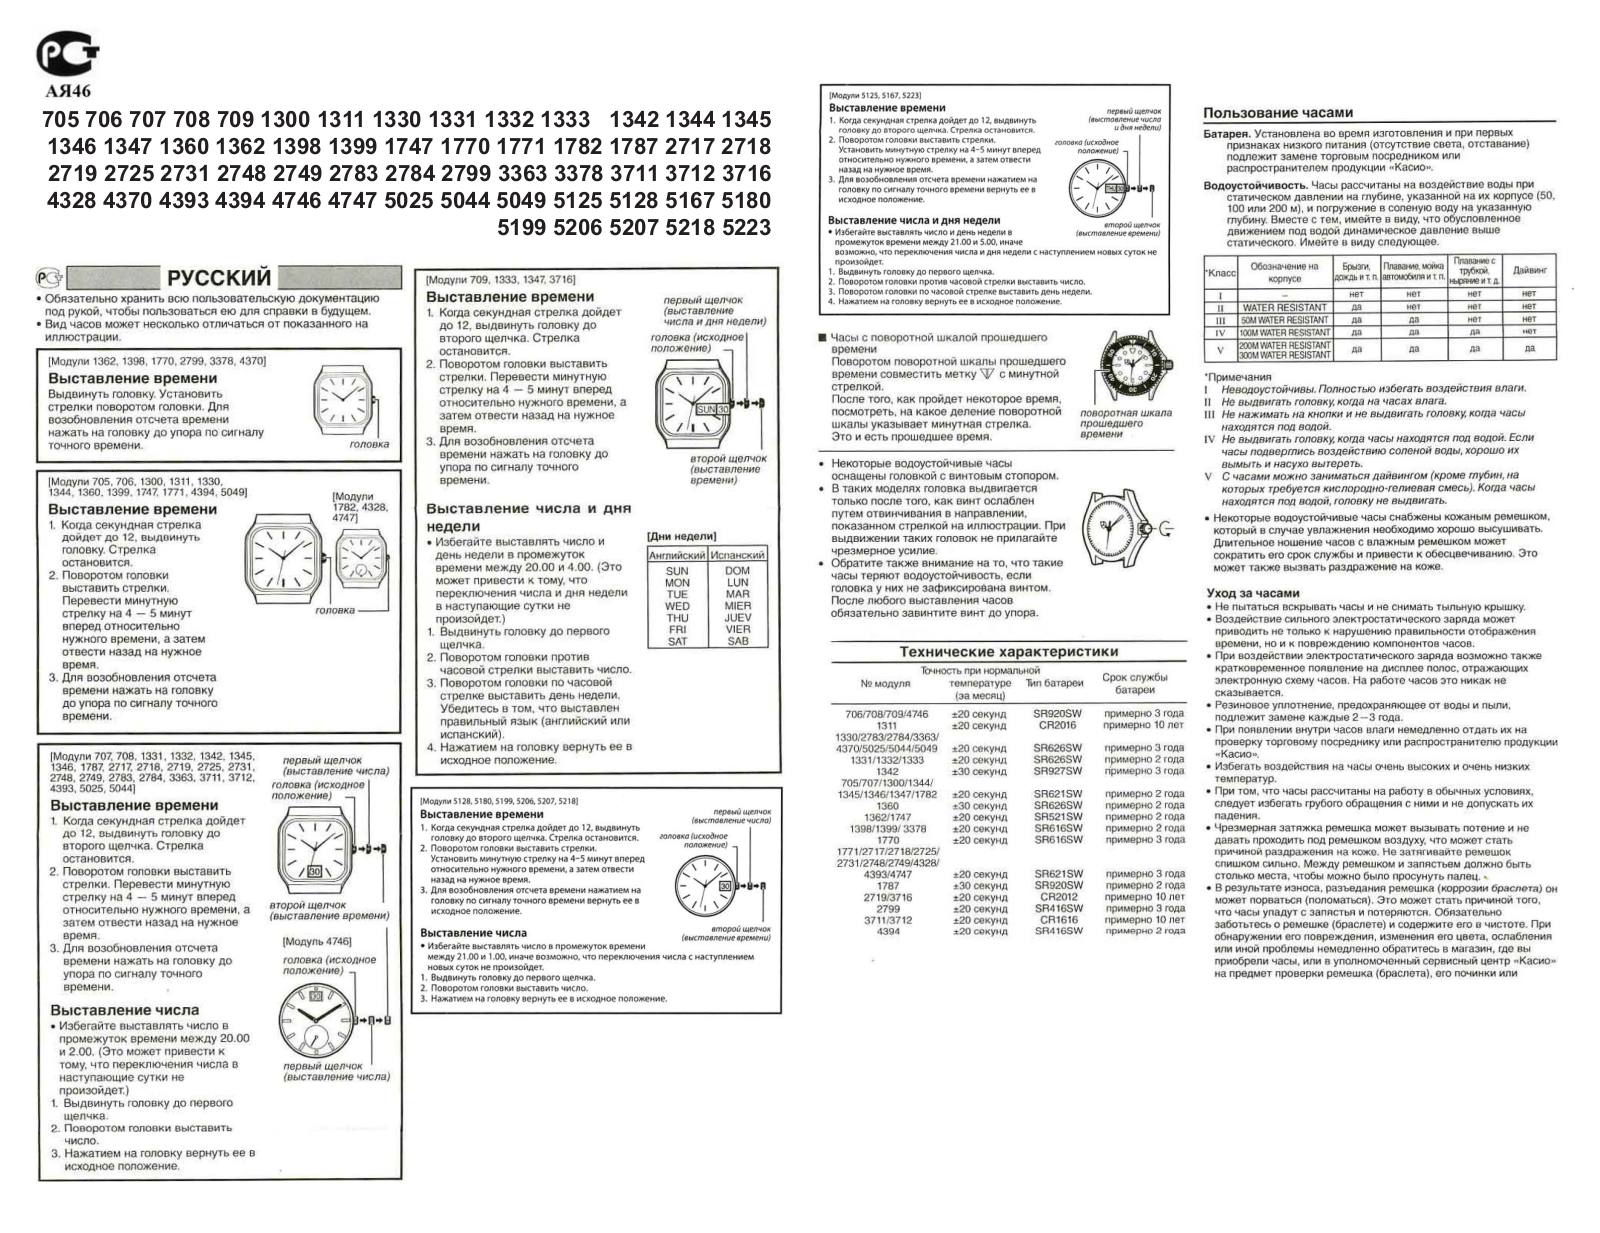 Casio 2784 User Manual